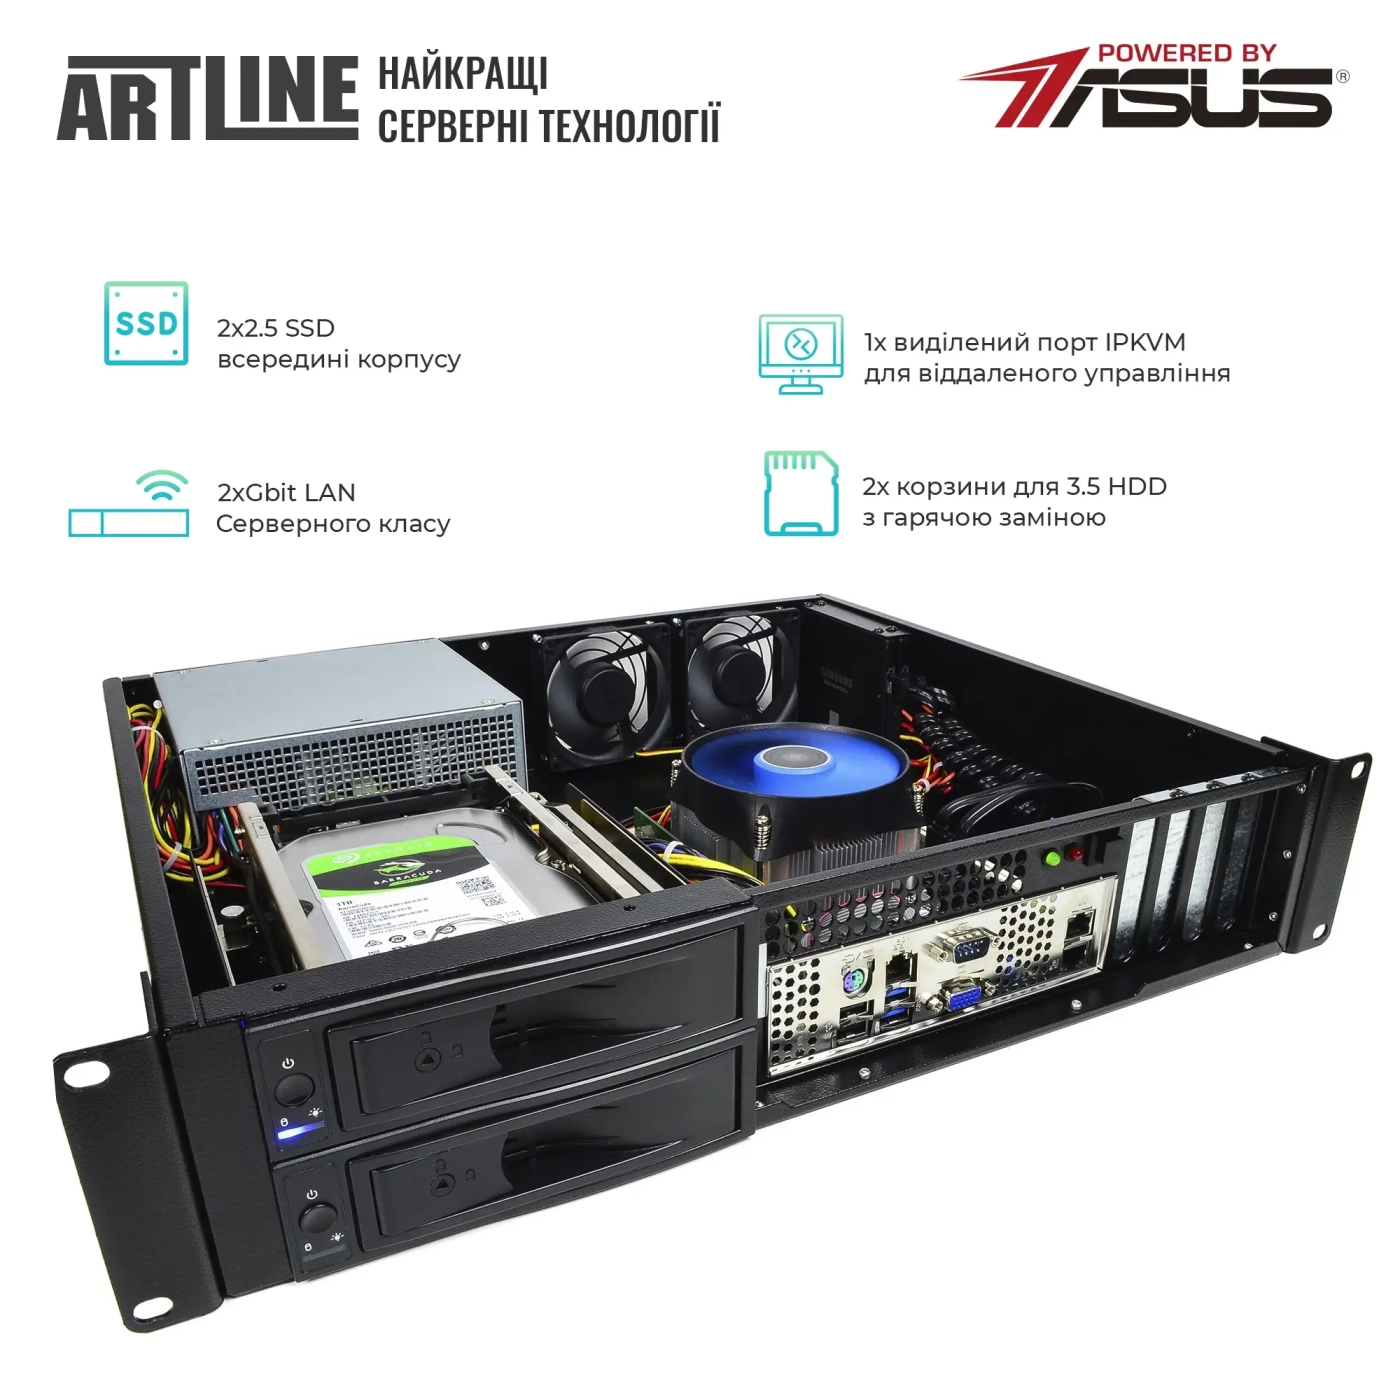 Купить Сервер ARTLINE Business R35 (R35v39) - фото 2